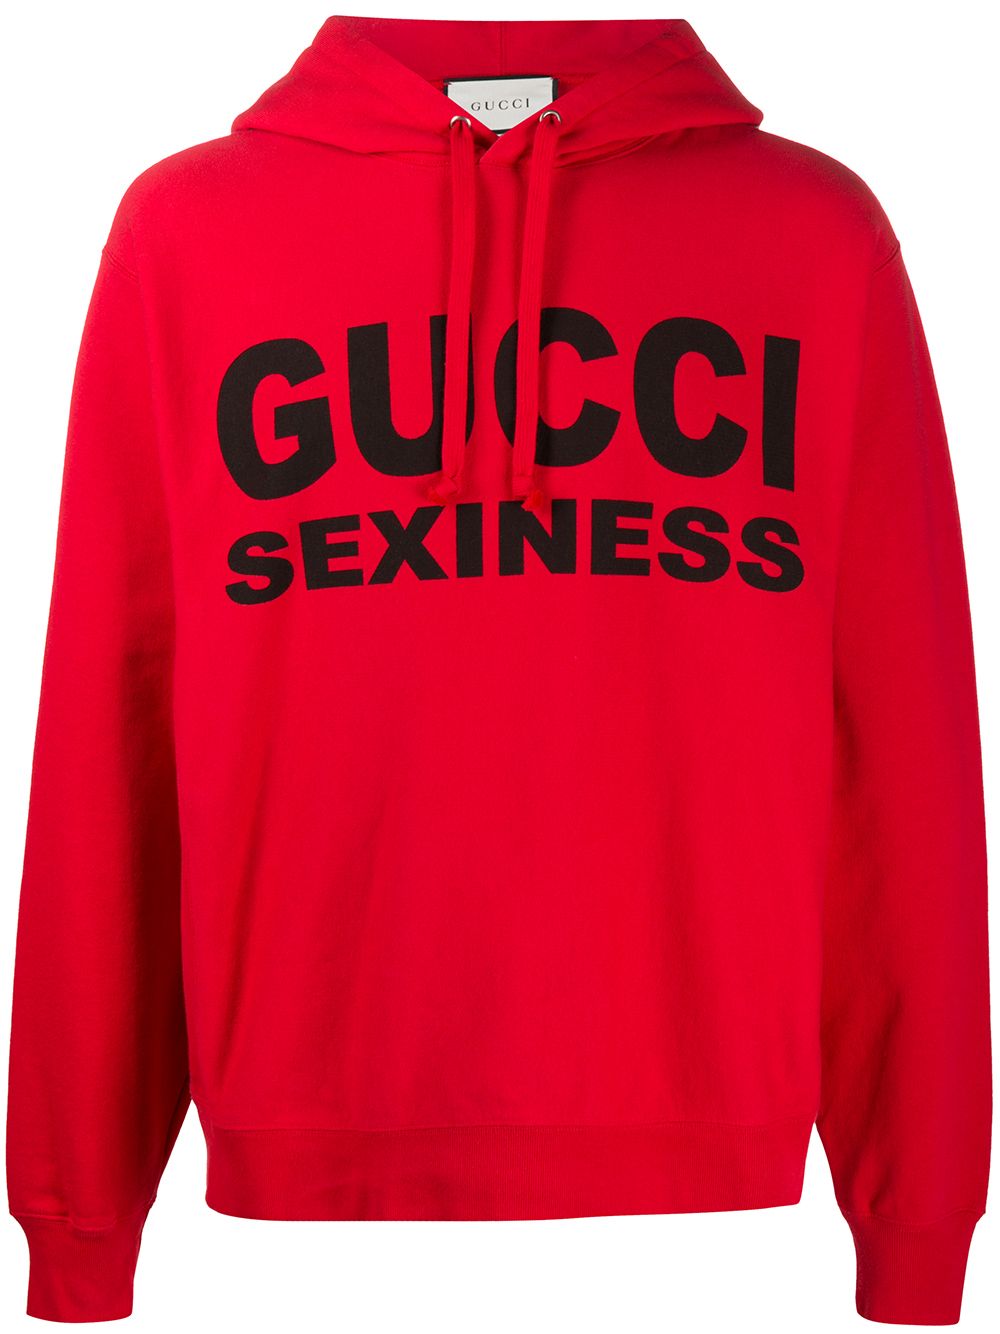 фото Gucci худи с принтом gucci sexiness